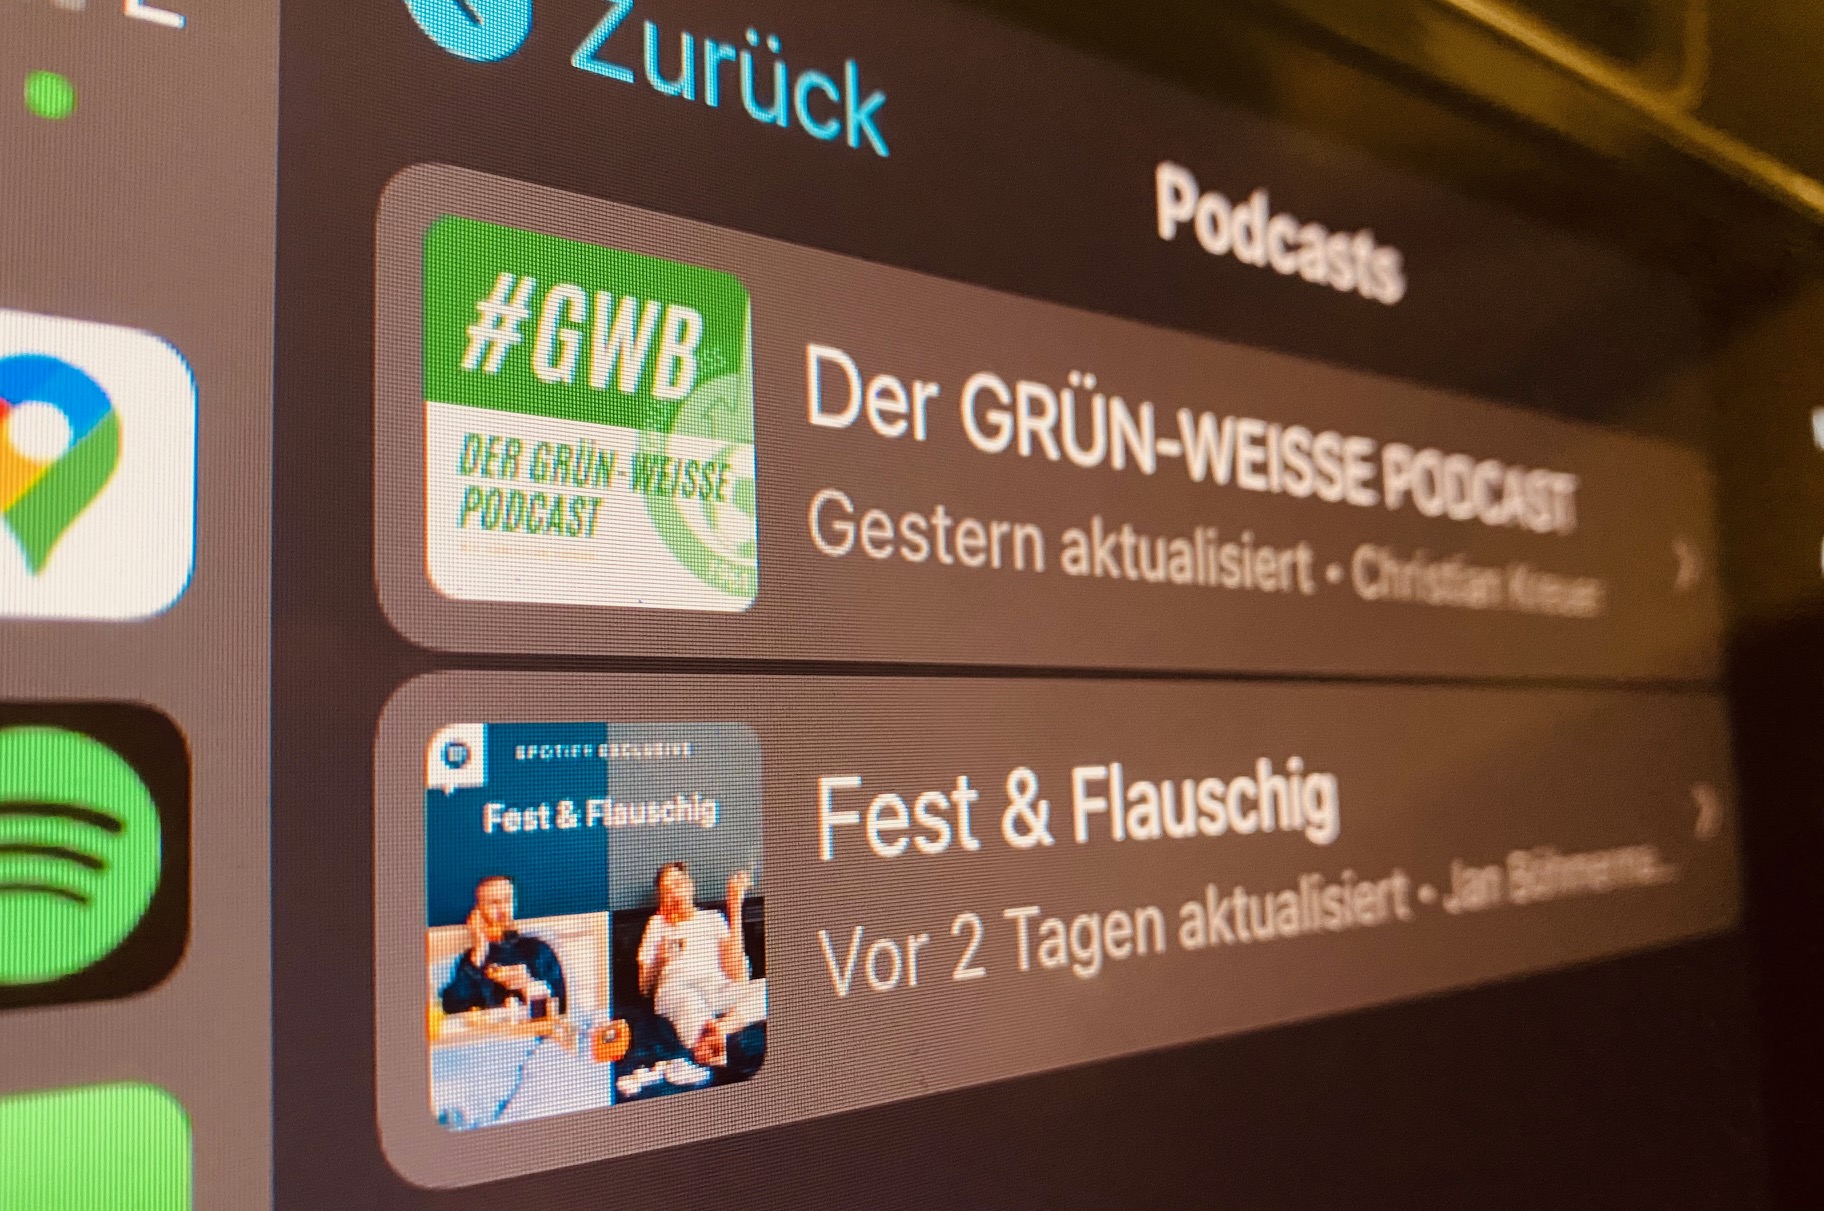 GWB Podcast